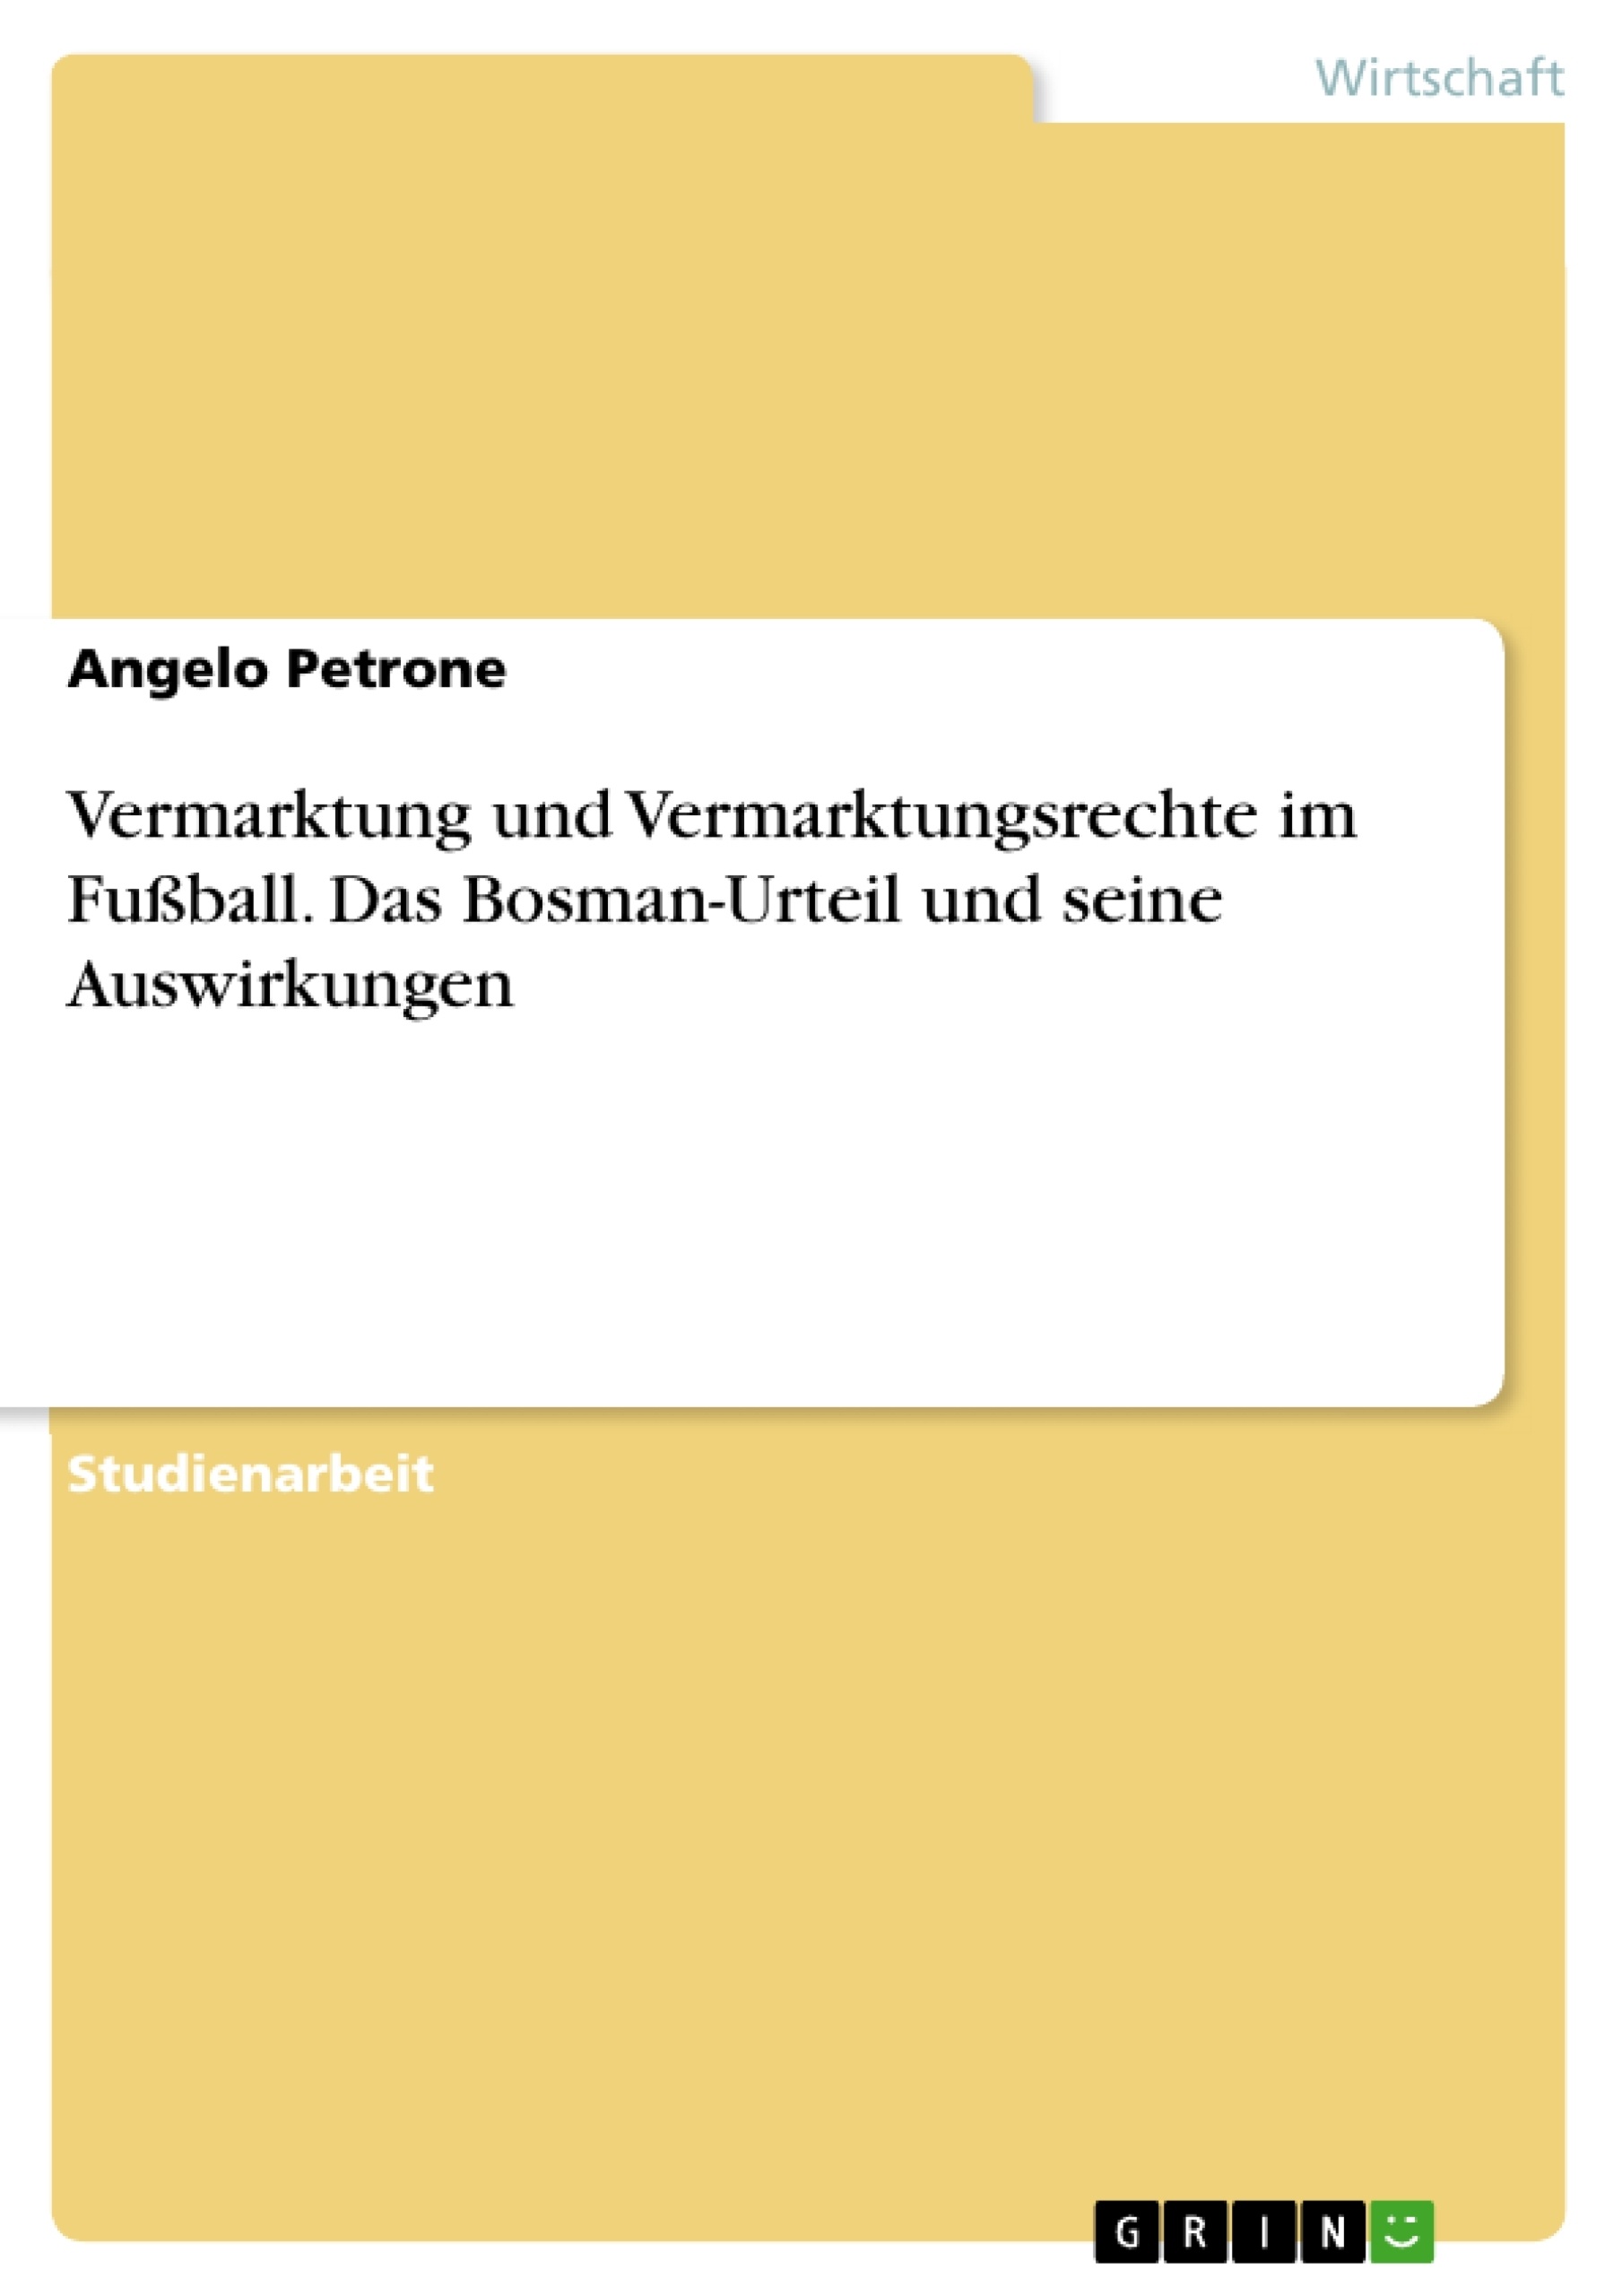 Title: Vermarktung und Vermarktungsrechte im Fußball. Das Bosman-Urteil und seine Auswirkungen